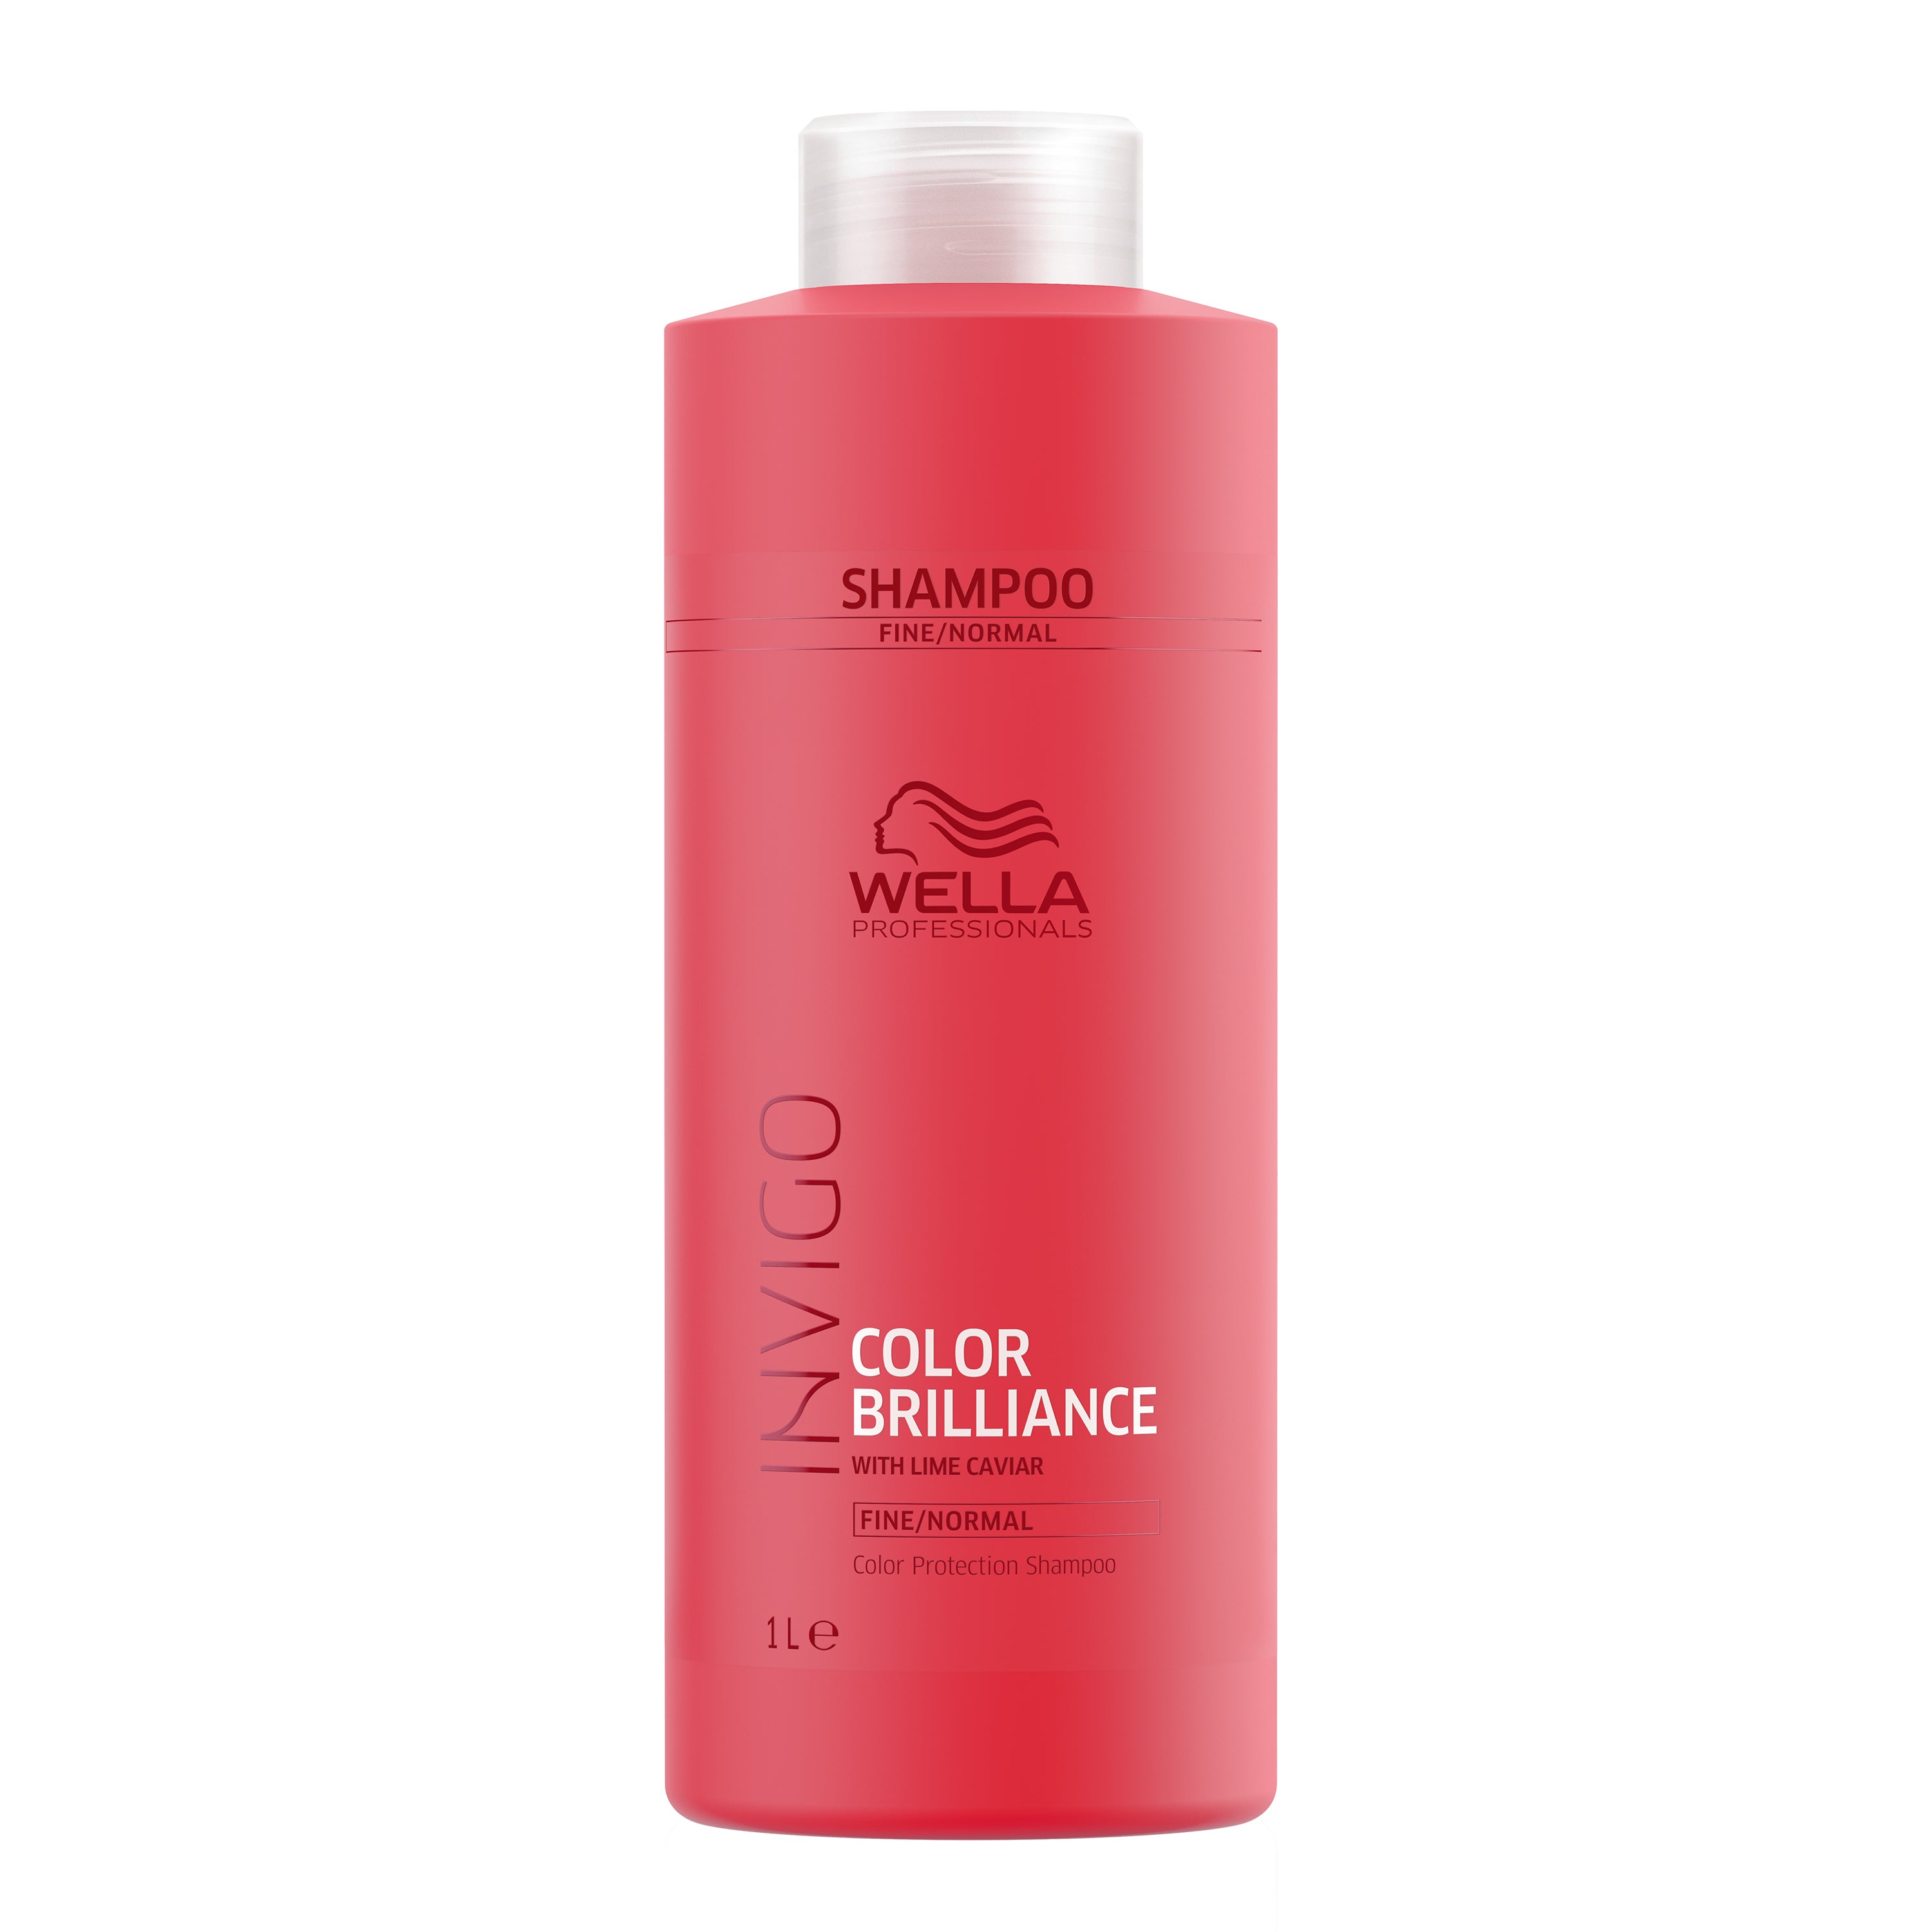 Wella Invigo Color Brilliance Shampoo & Conditioner 1 Litre Duo